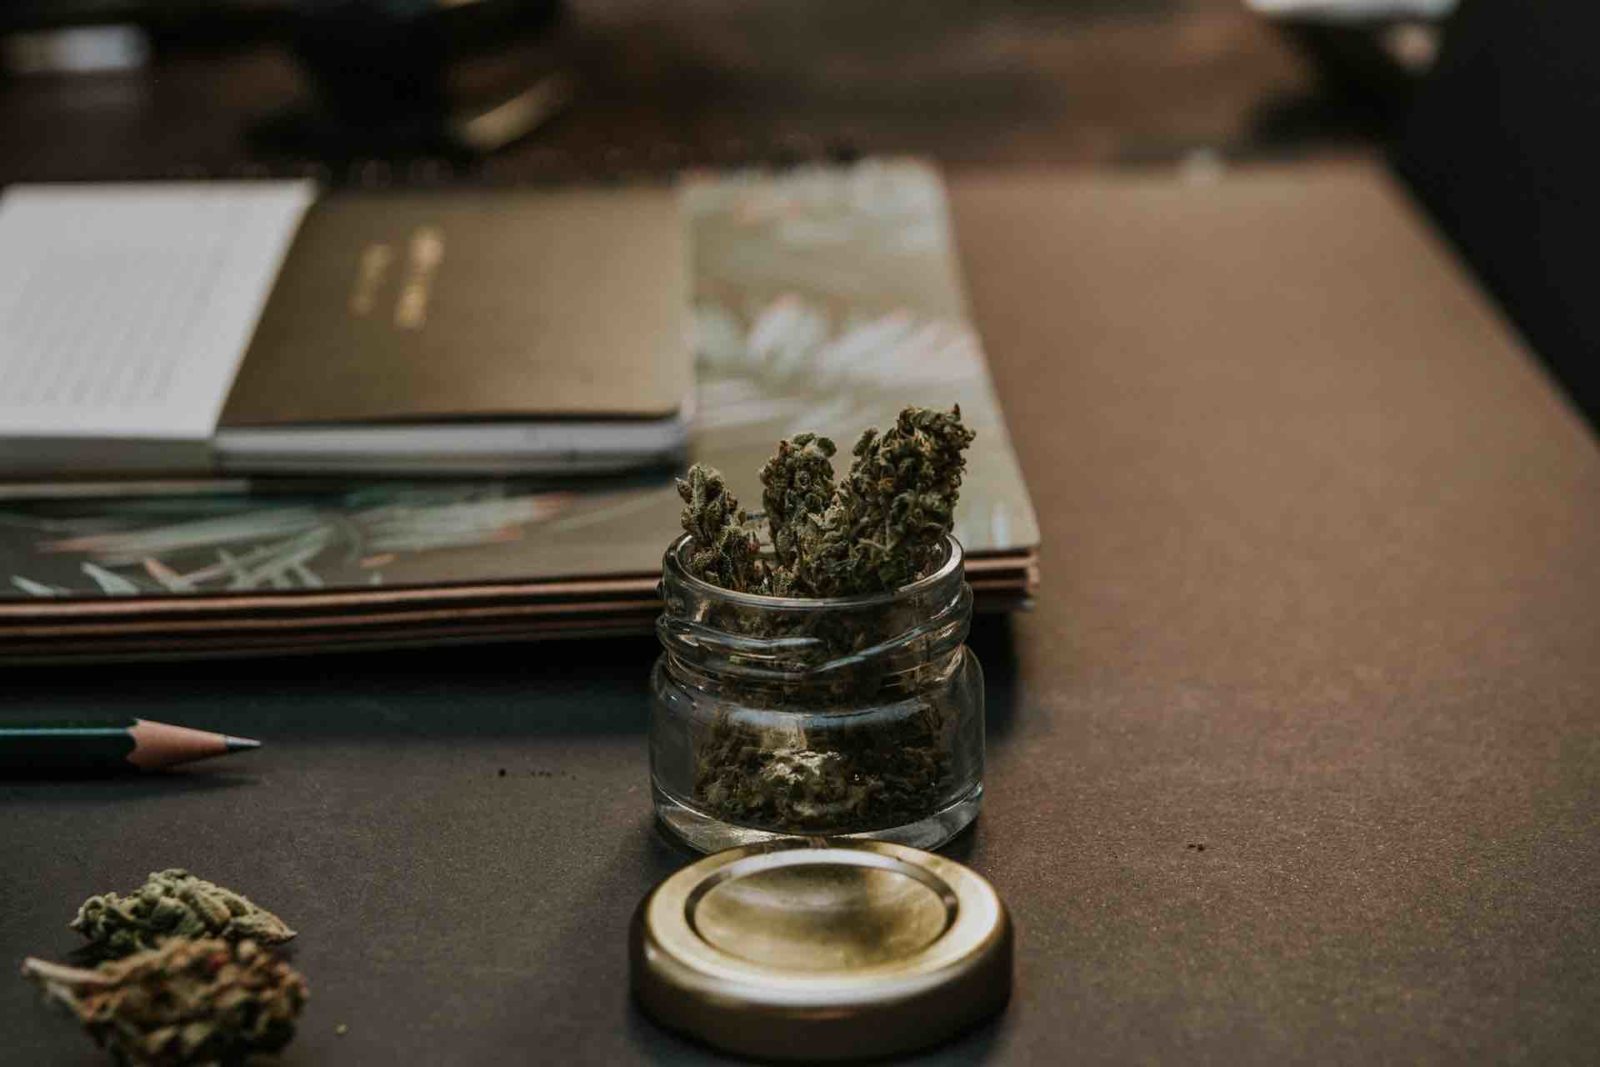 Jar of cannabis